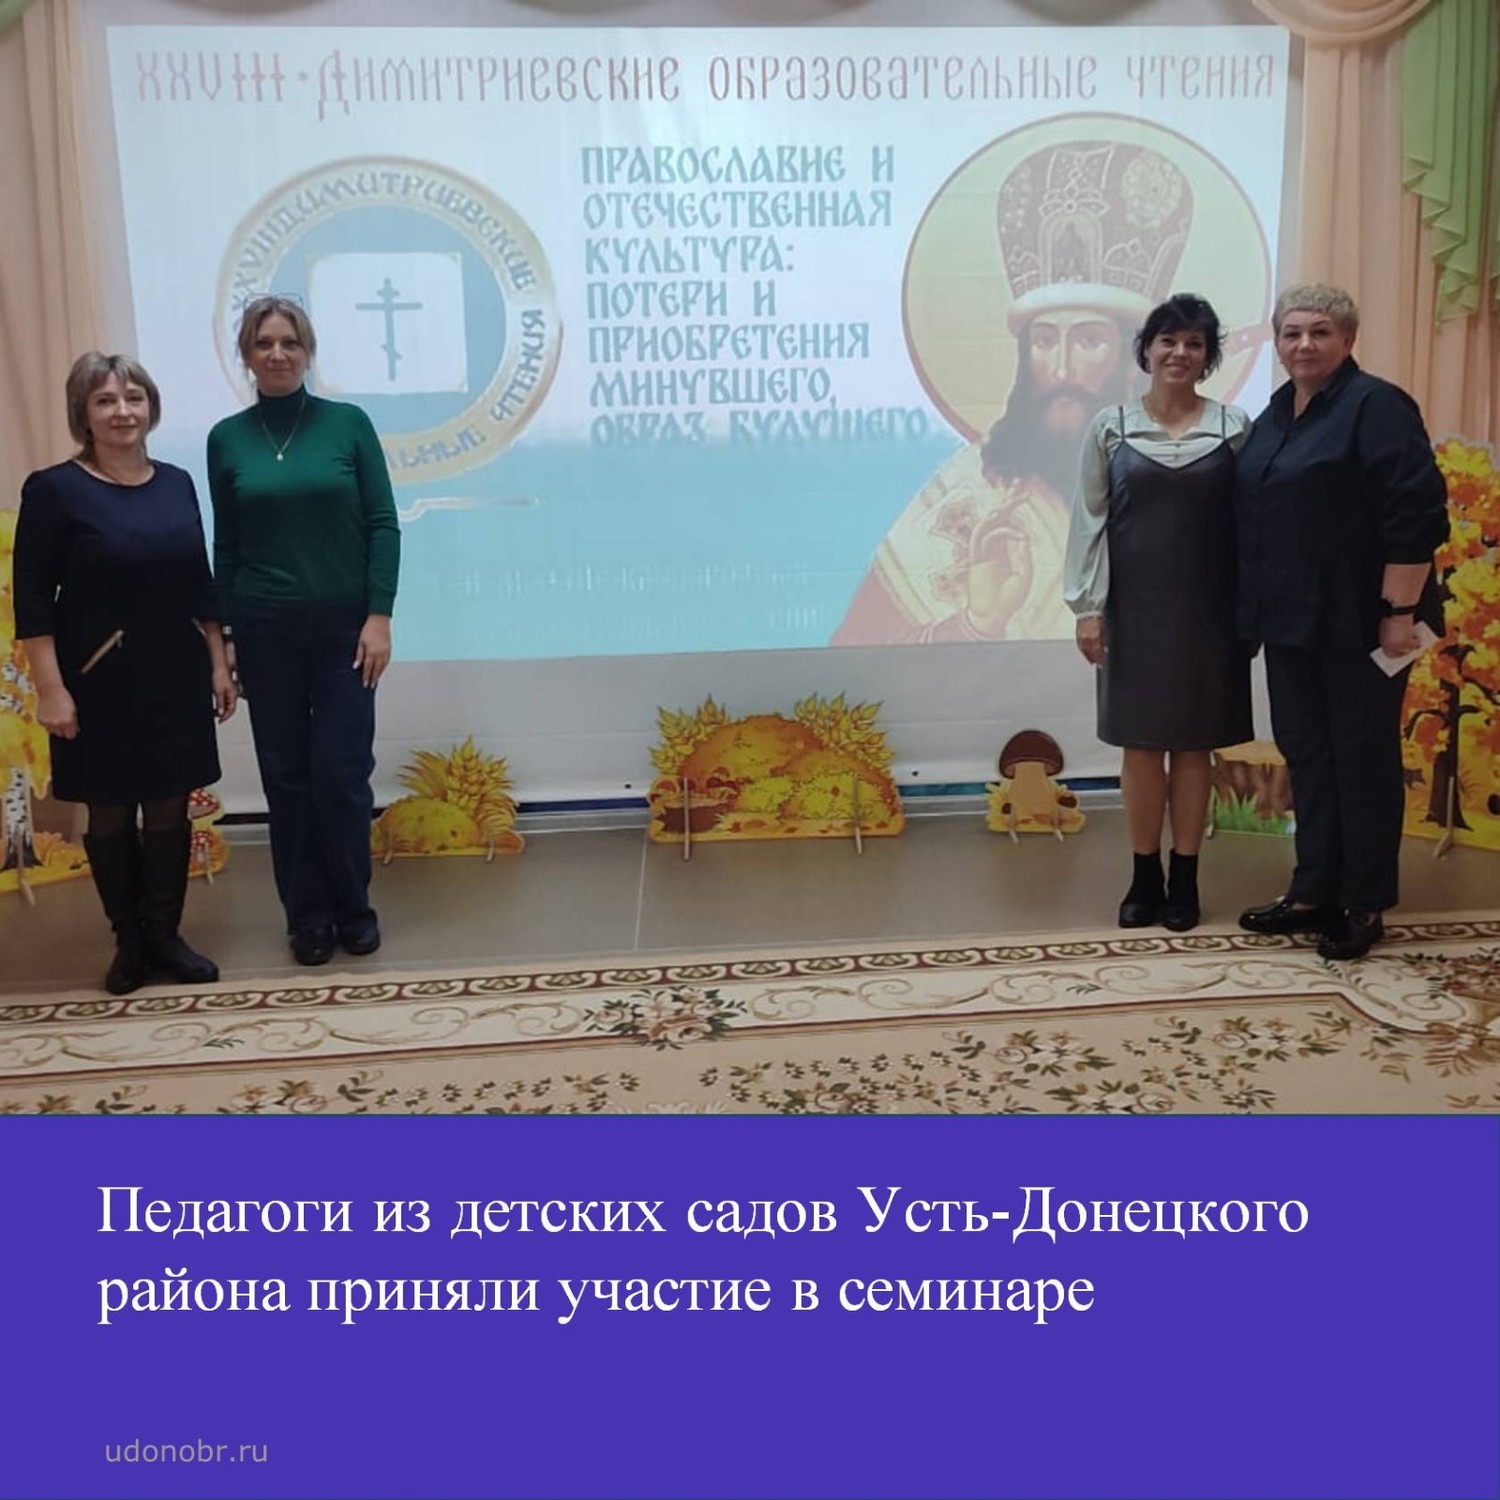 Педагоги из детских садов Усть-Донецкого района приняли участие в семинаре